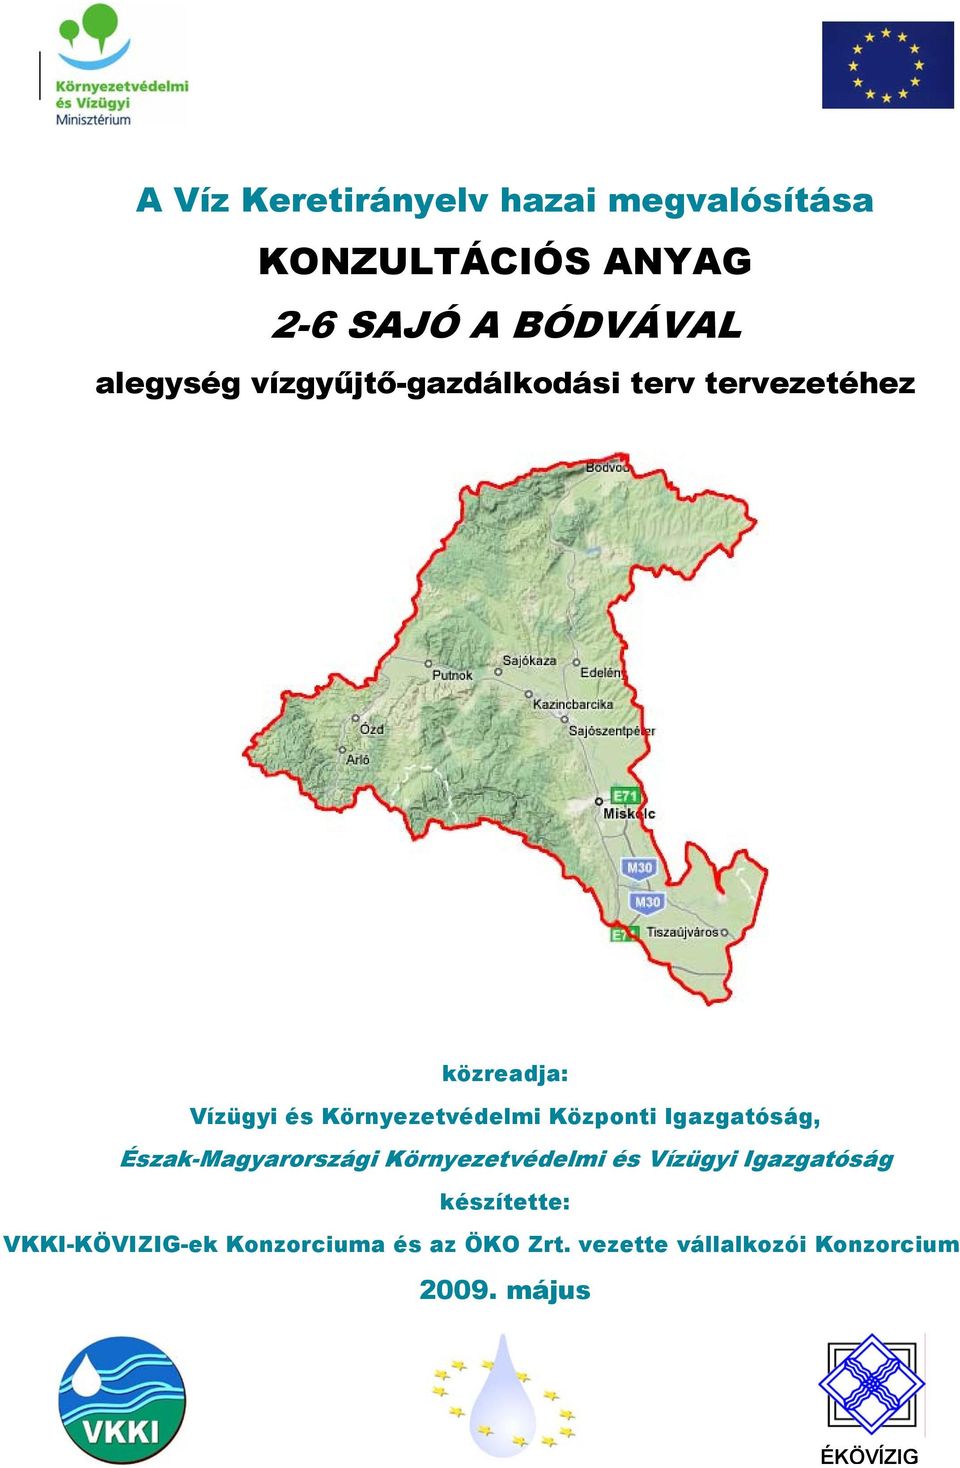 Központi Igazgatóság, Észak-Magyarországi Környezetvédelmi és Vízügyi Igazgatóság